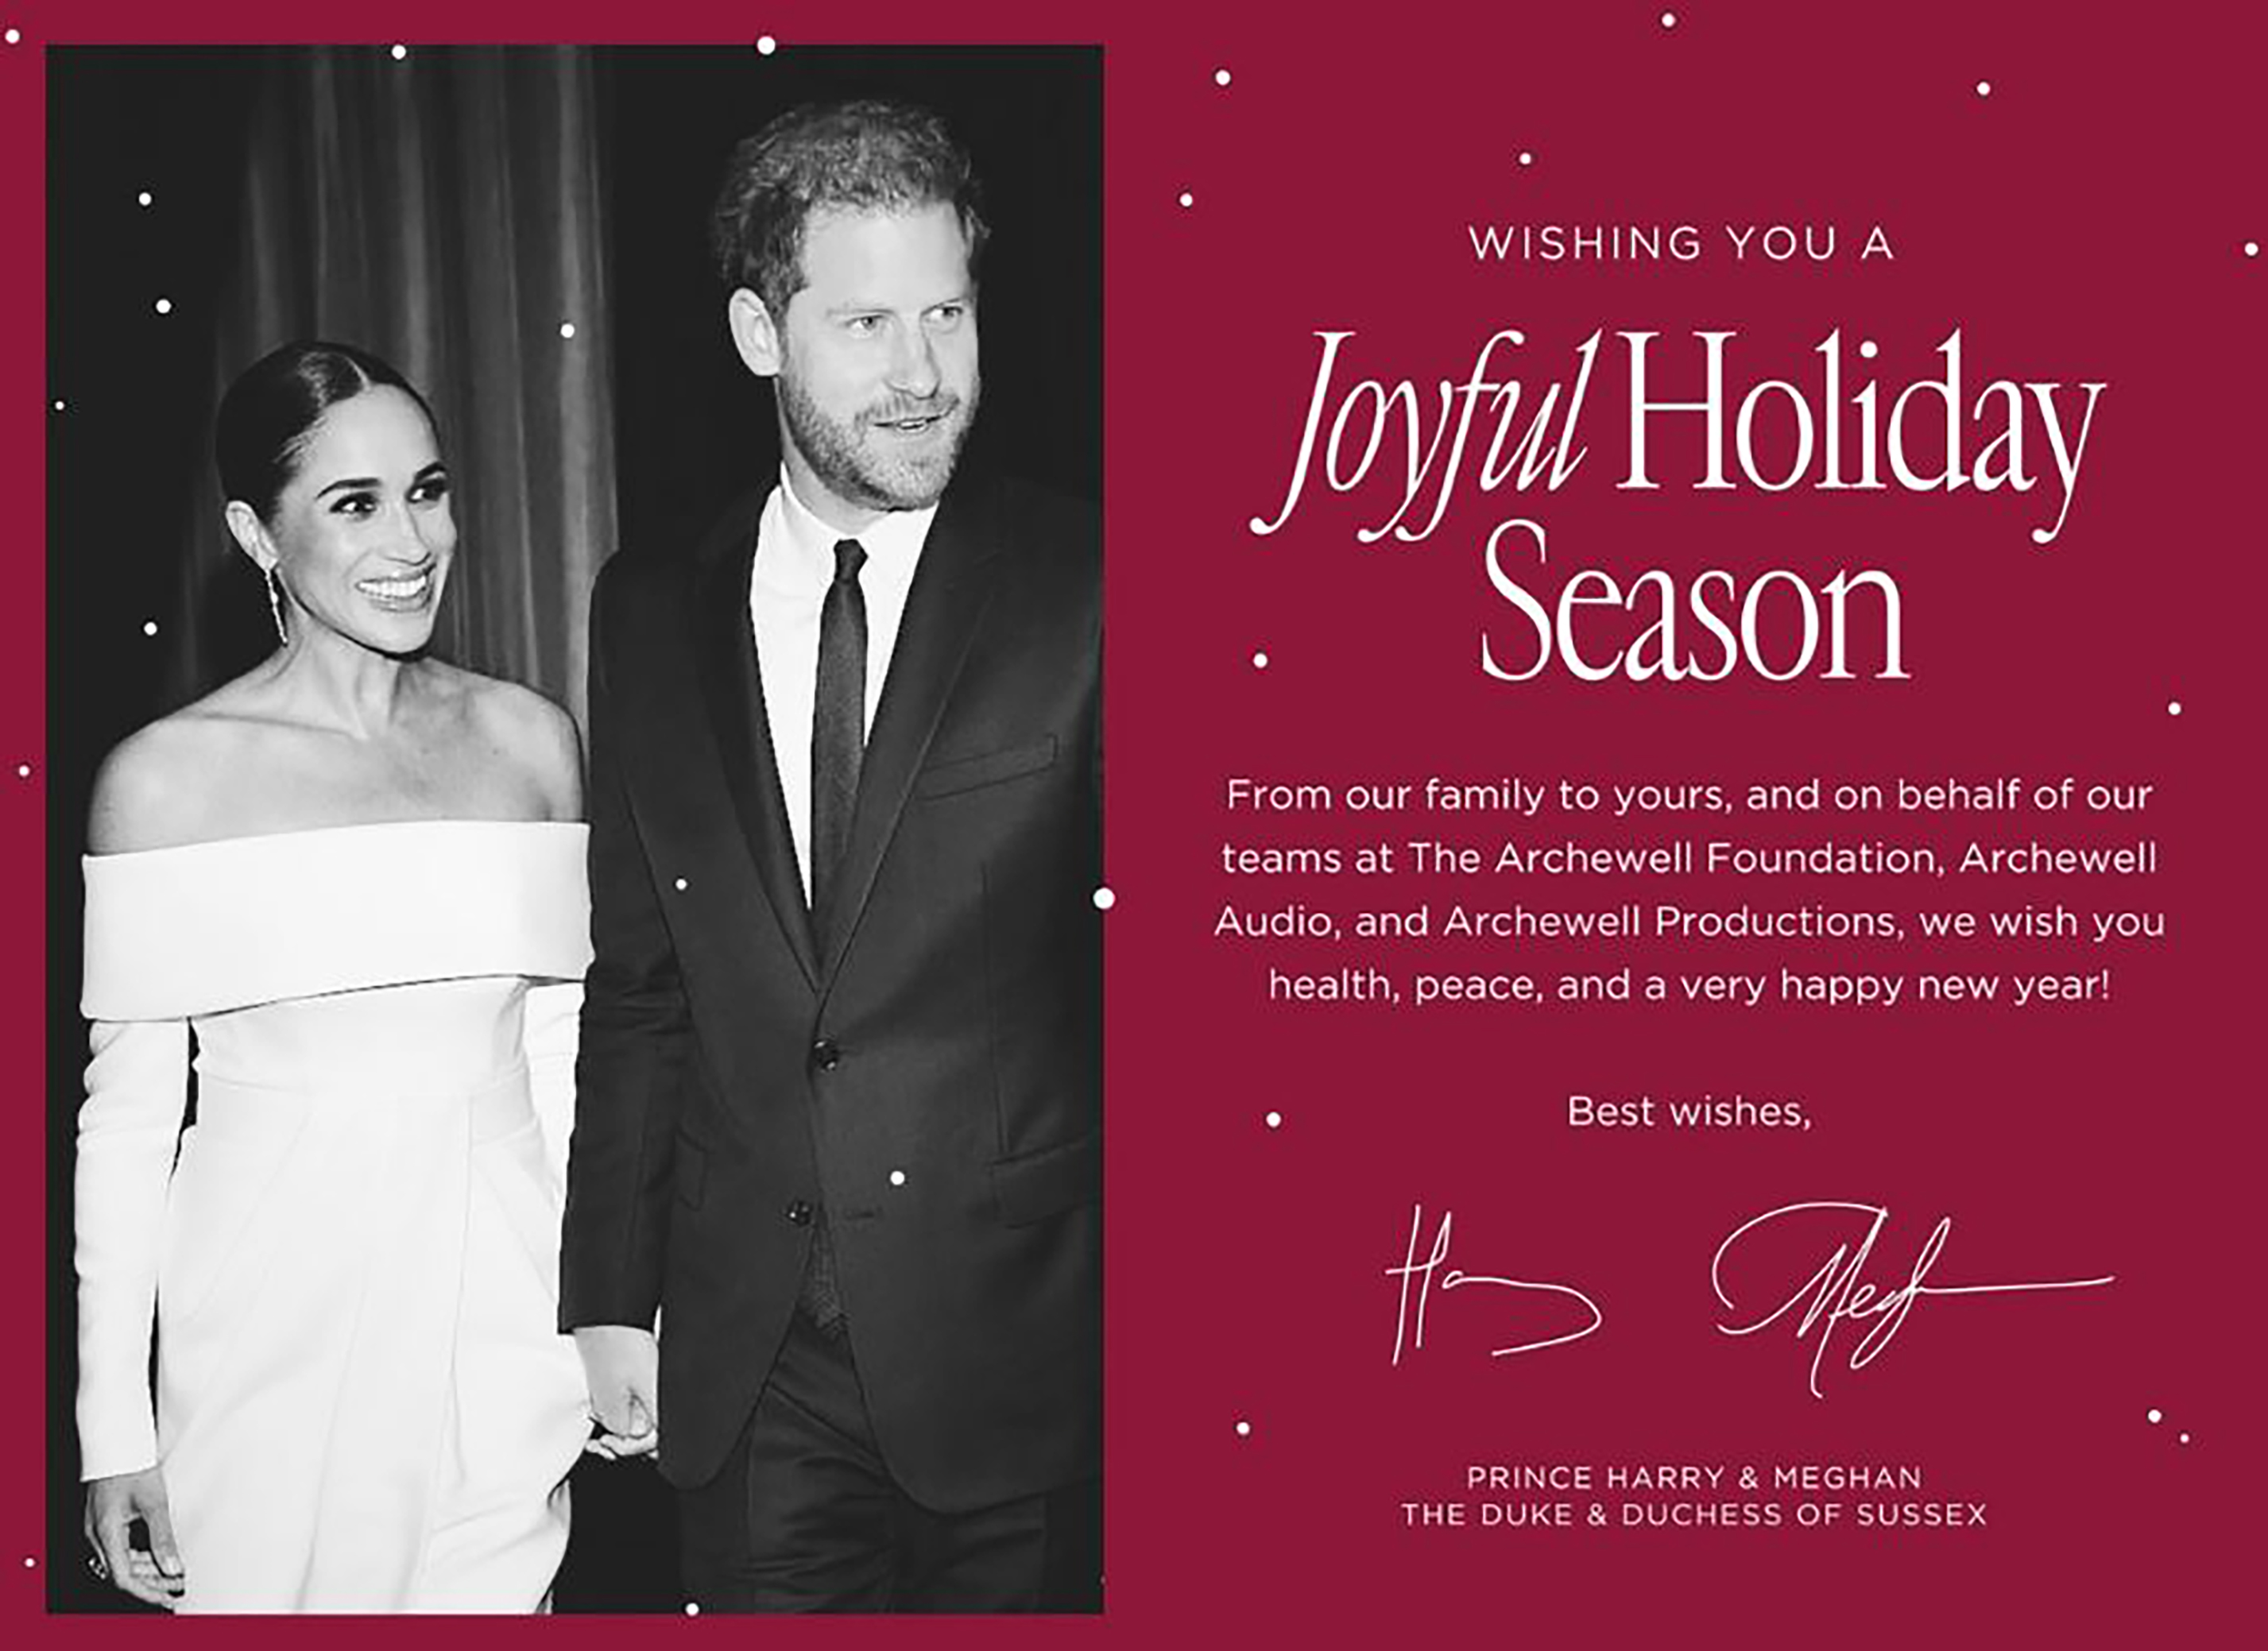 Le prince Harry et Meghan ont publié vendredi leur carte de Noël sans papier.